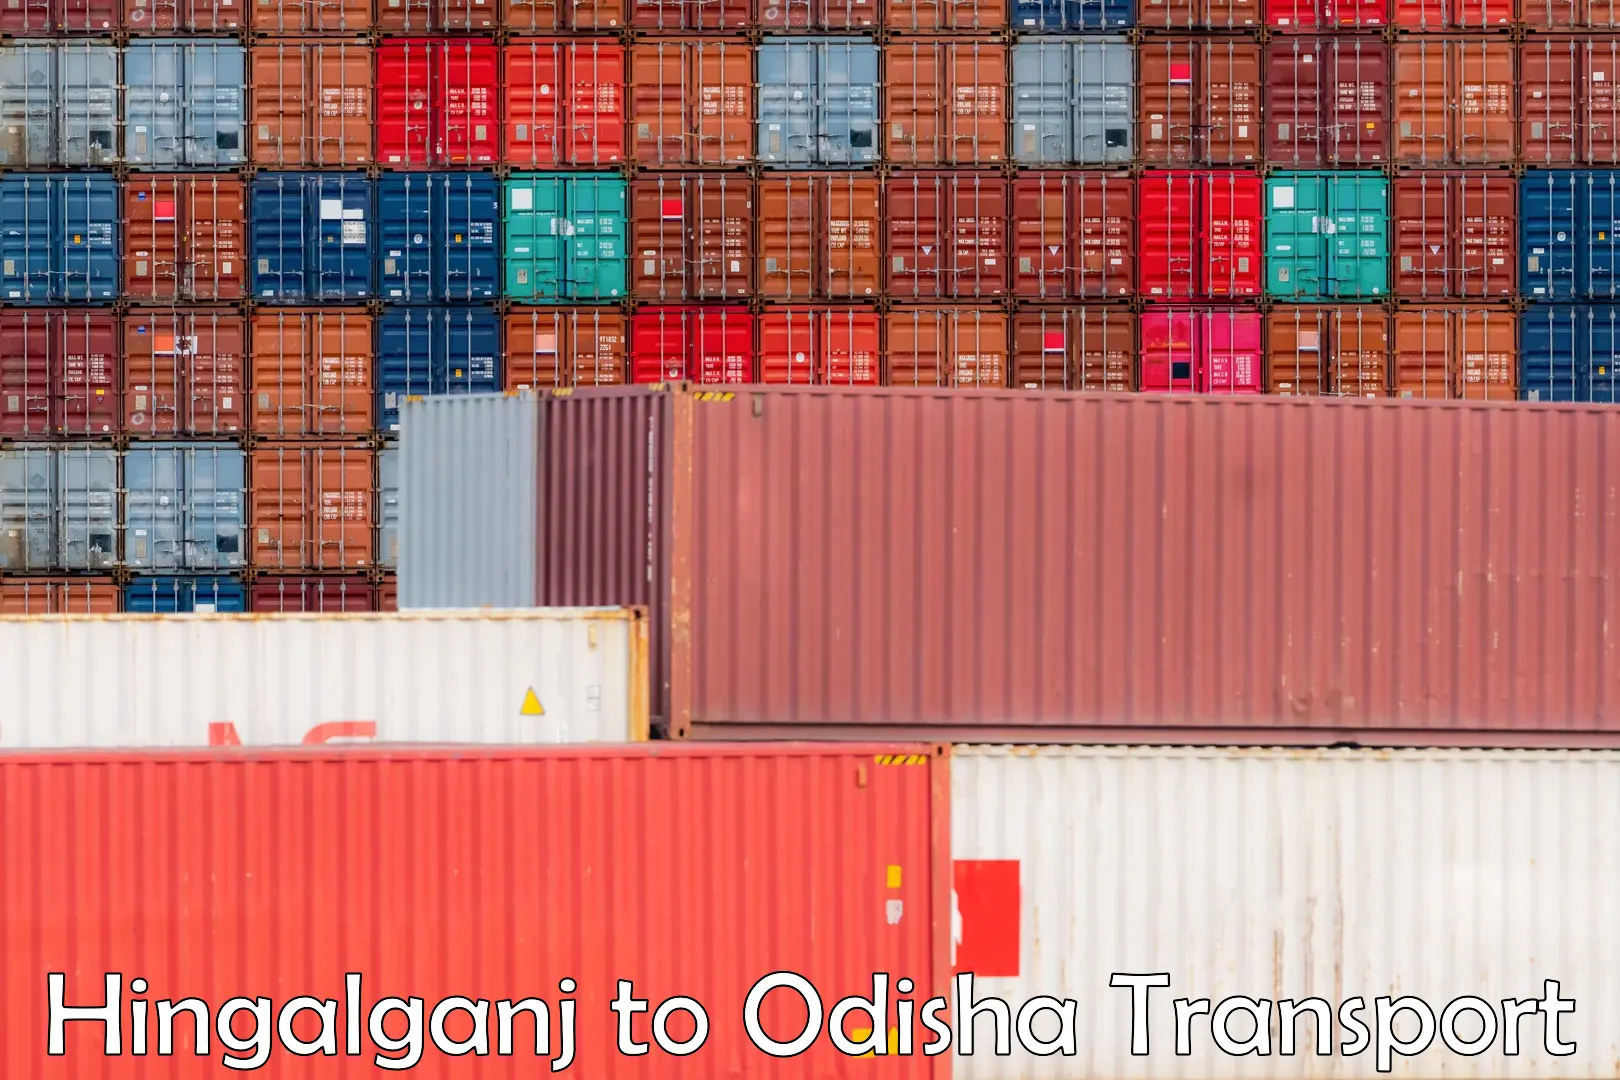 Container transport service Hingalganj to Baisinga